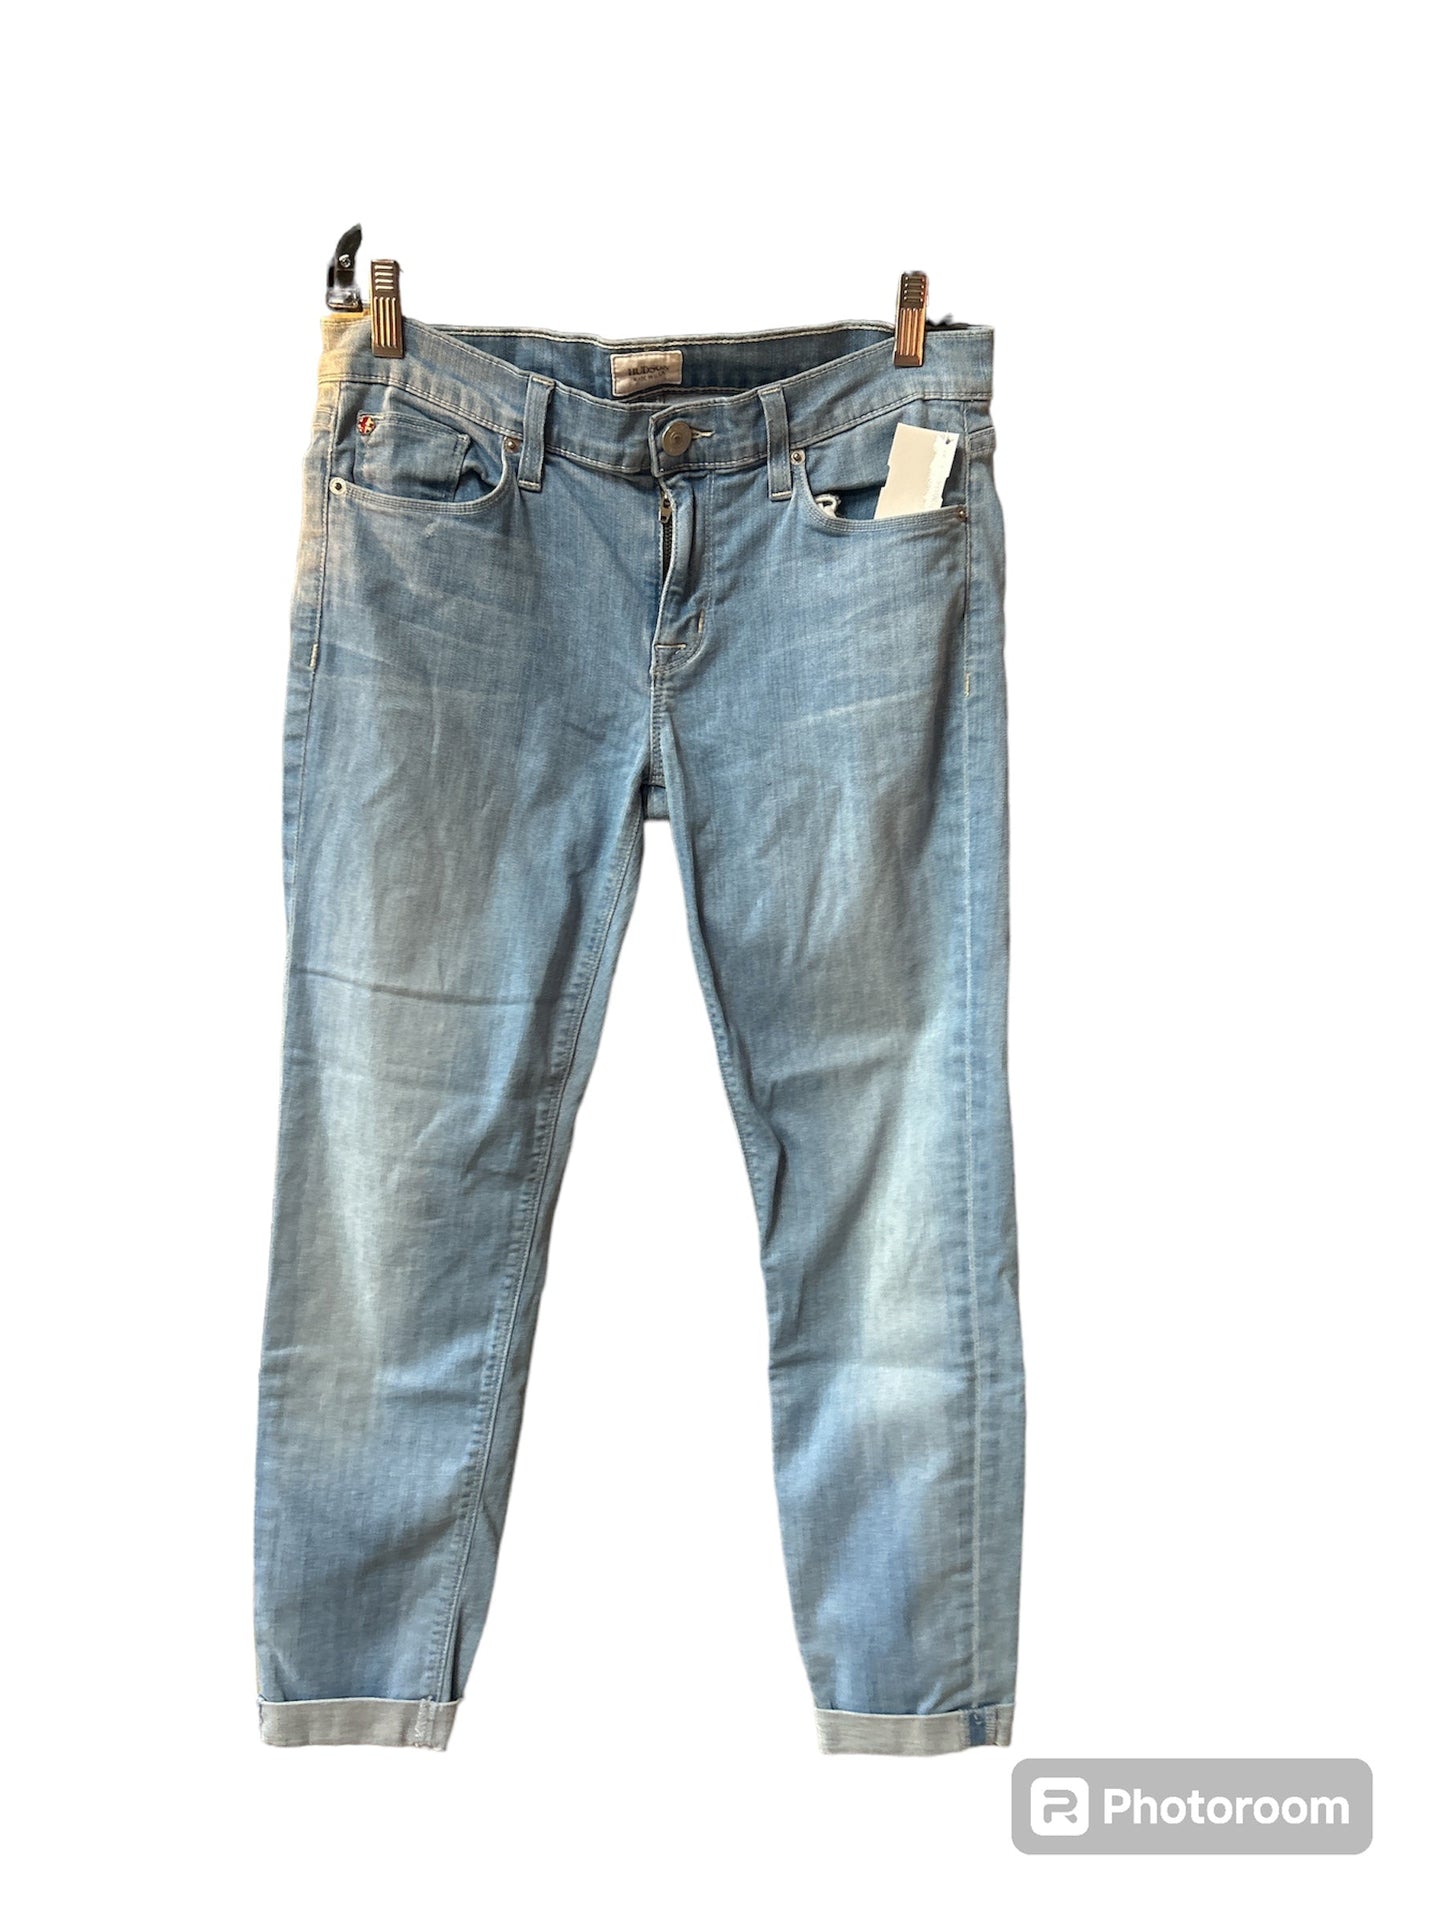 Blue Denim Jeans Designer Hudson, Size 29